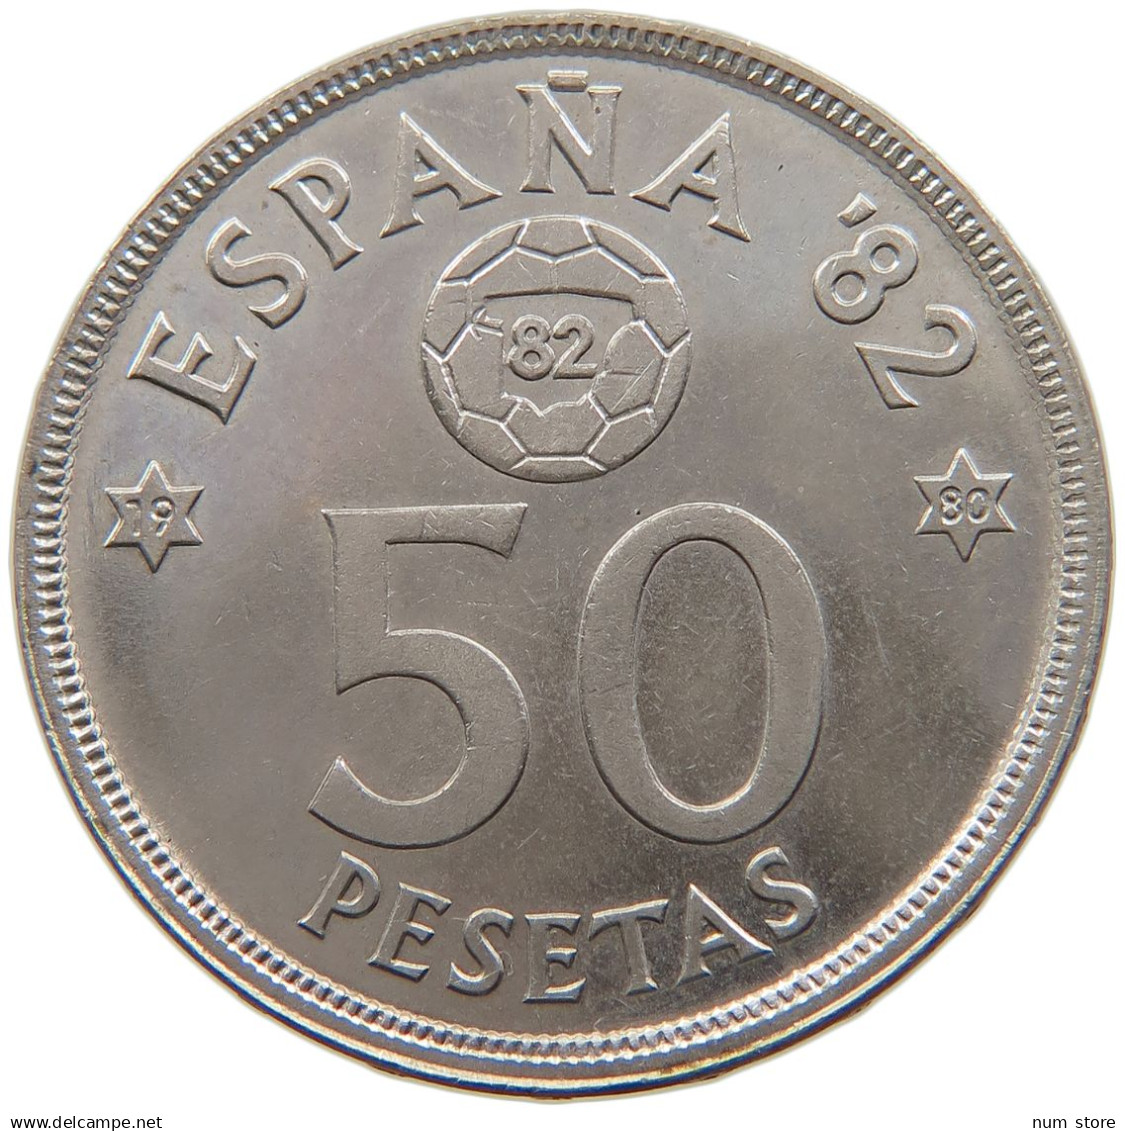 SPAIN 50 PESETAS 1980 #s114 0015 - 50 Pesetas